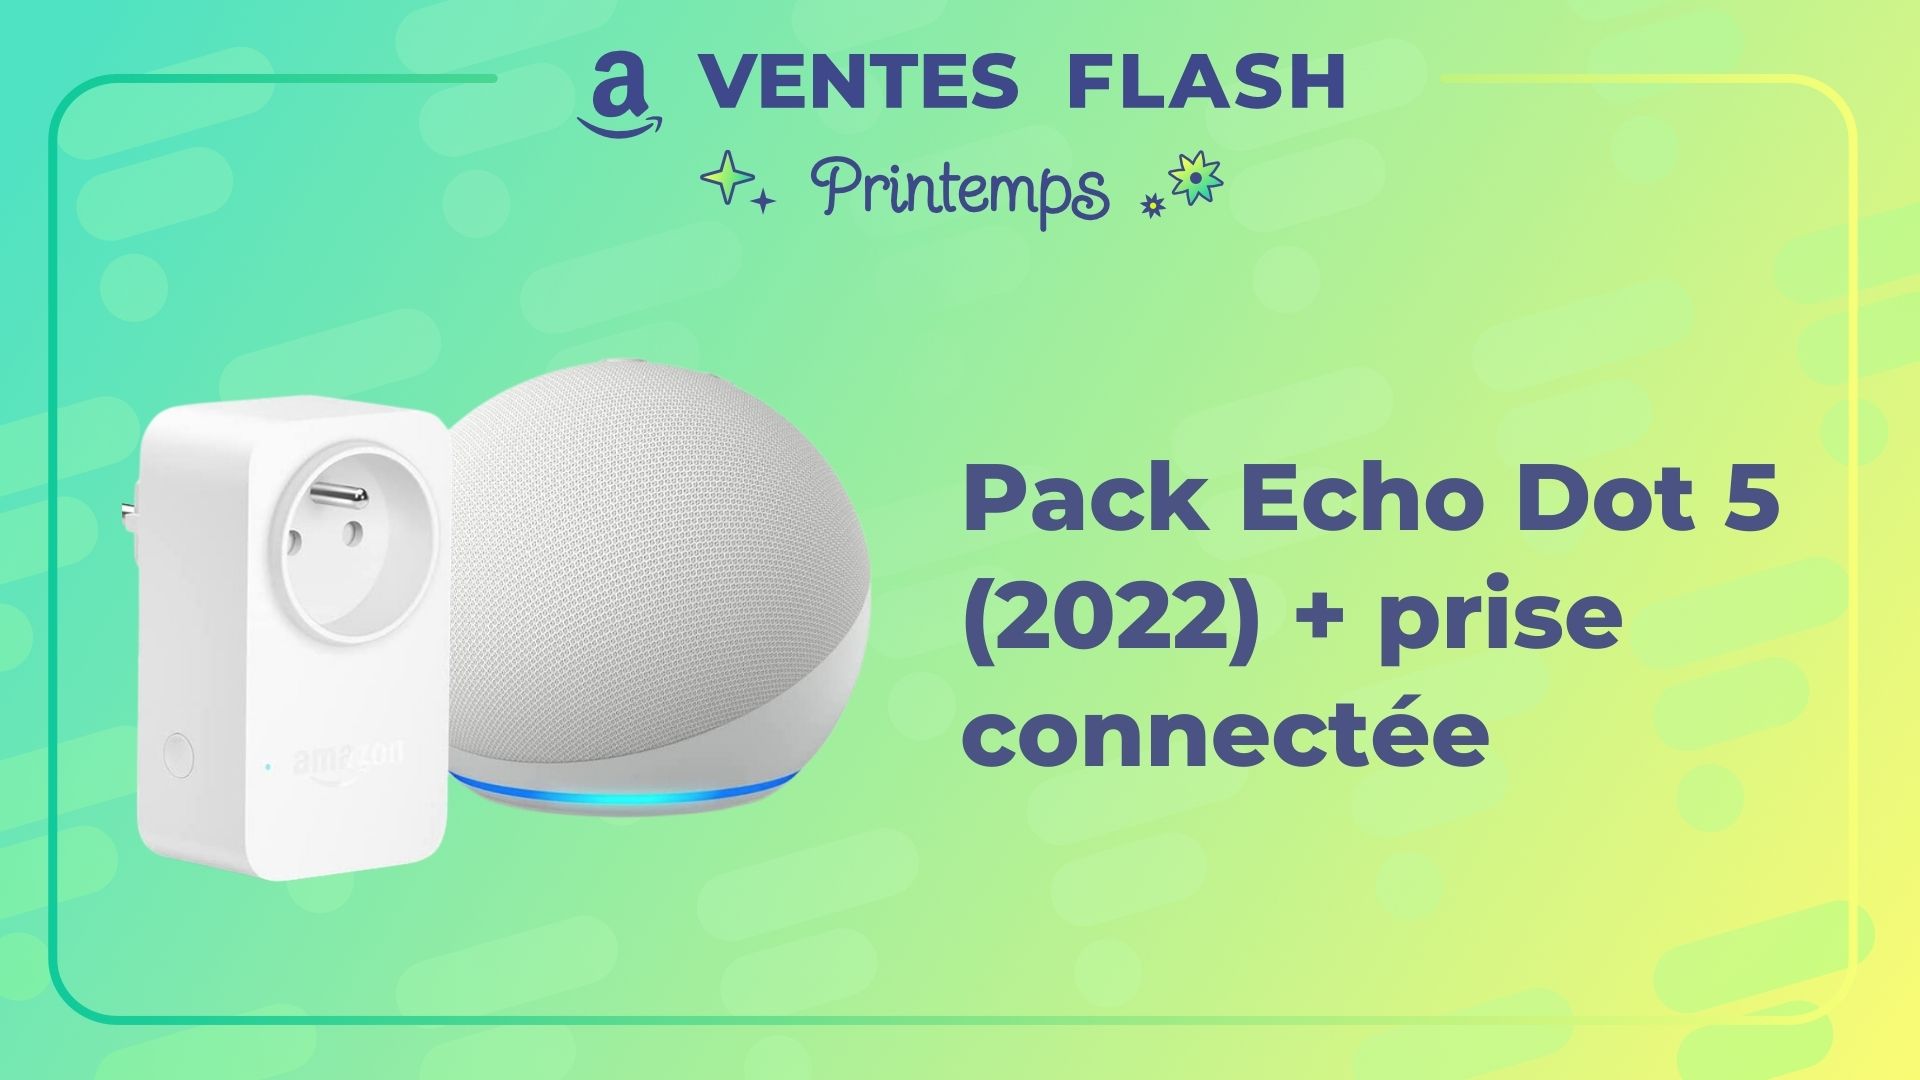 Le nouveau Echo Dot avec une ampoule connectée pour moins de 35 €